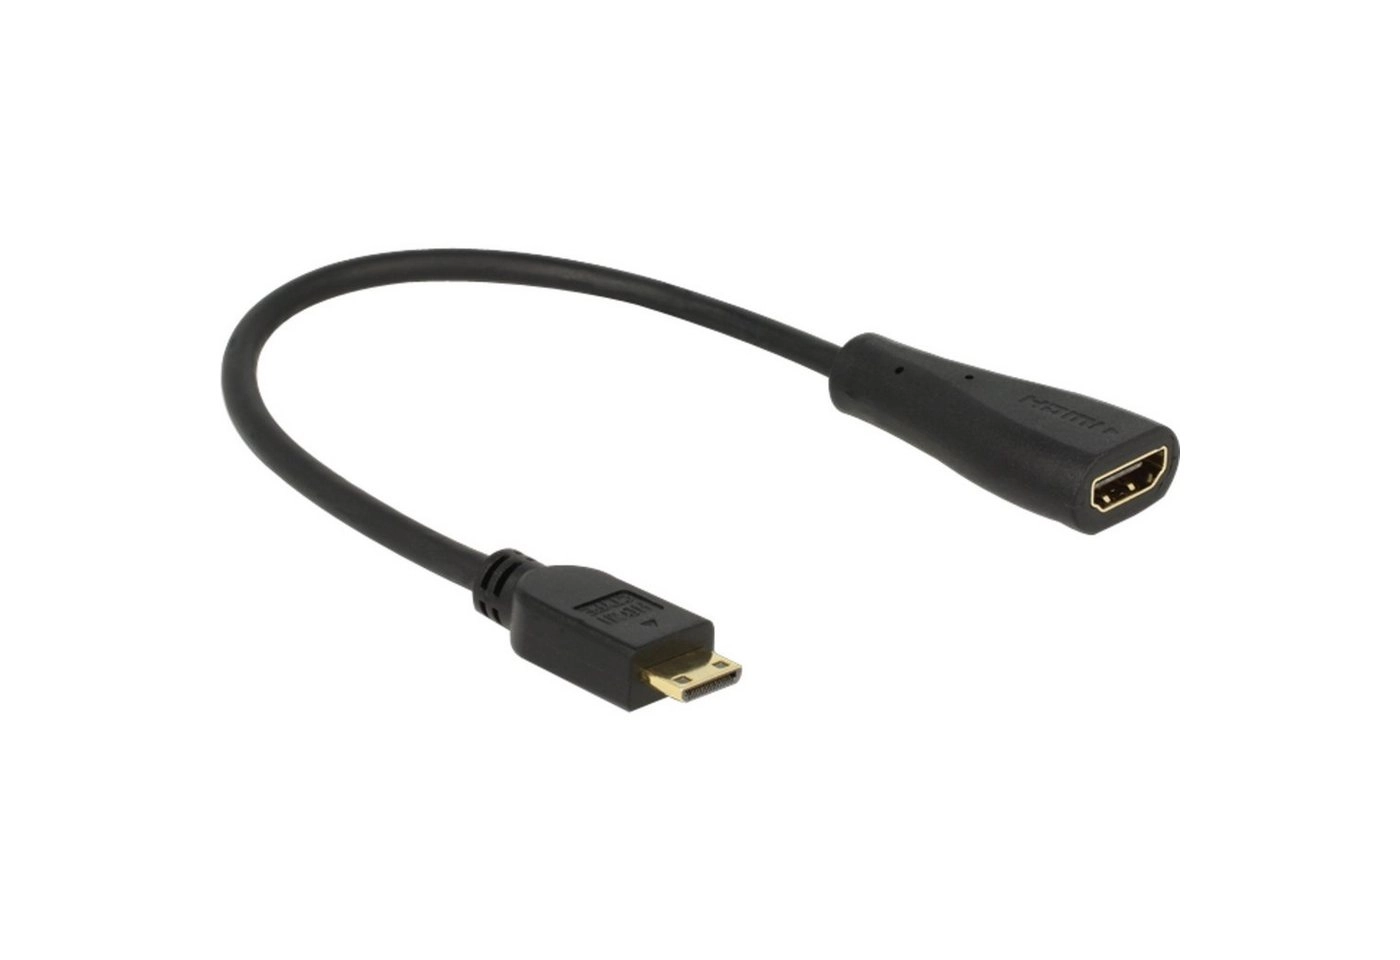 Kabel HDMI mini C Stecker > HDMI-A Buchse, Adapter